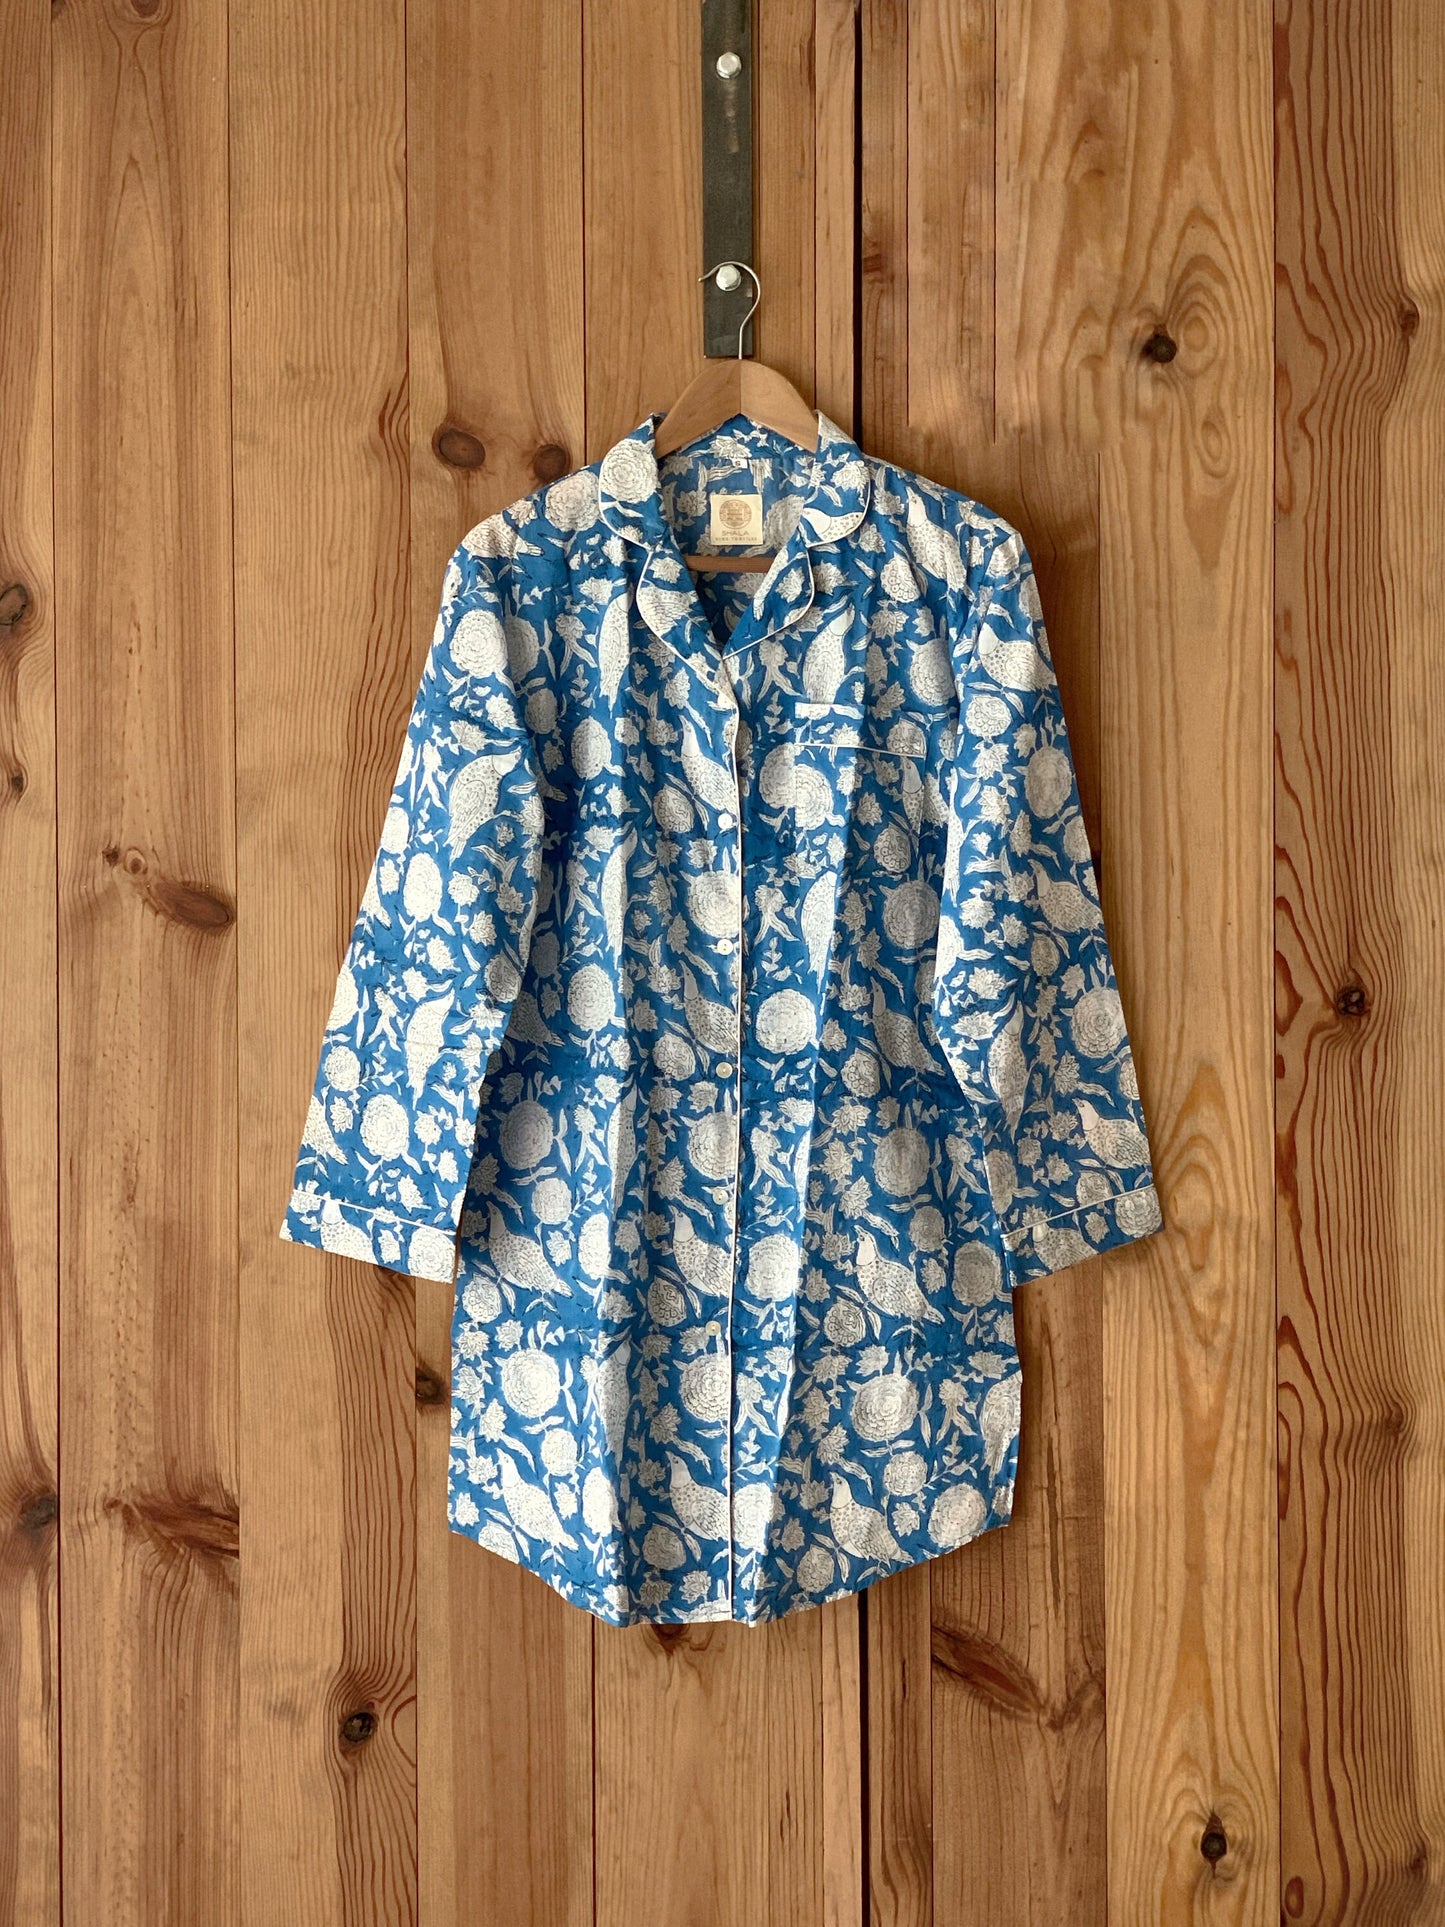 SET regalo · Camisón manga larga & bata kimono a juego · Algodón puro estampado block print artesanal en India · Azul mix